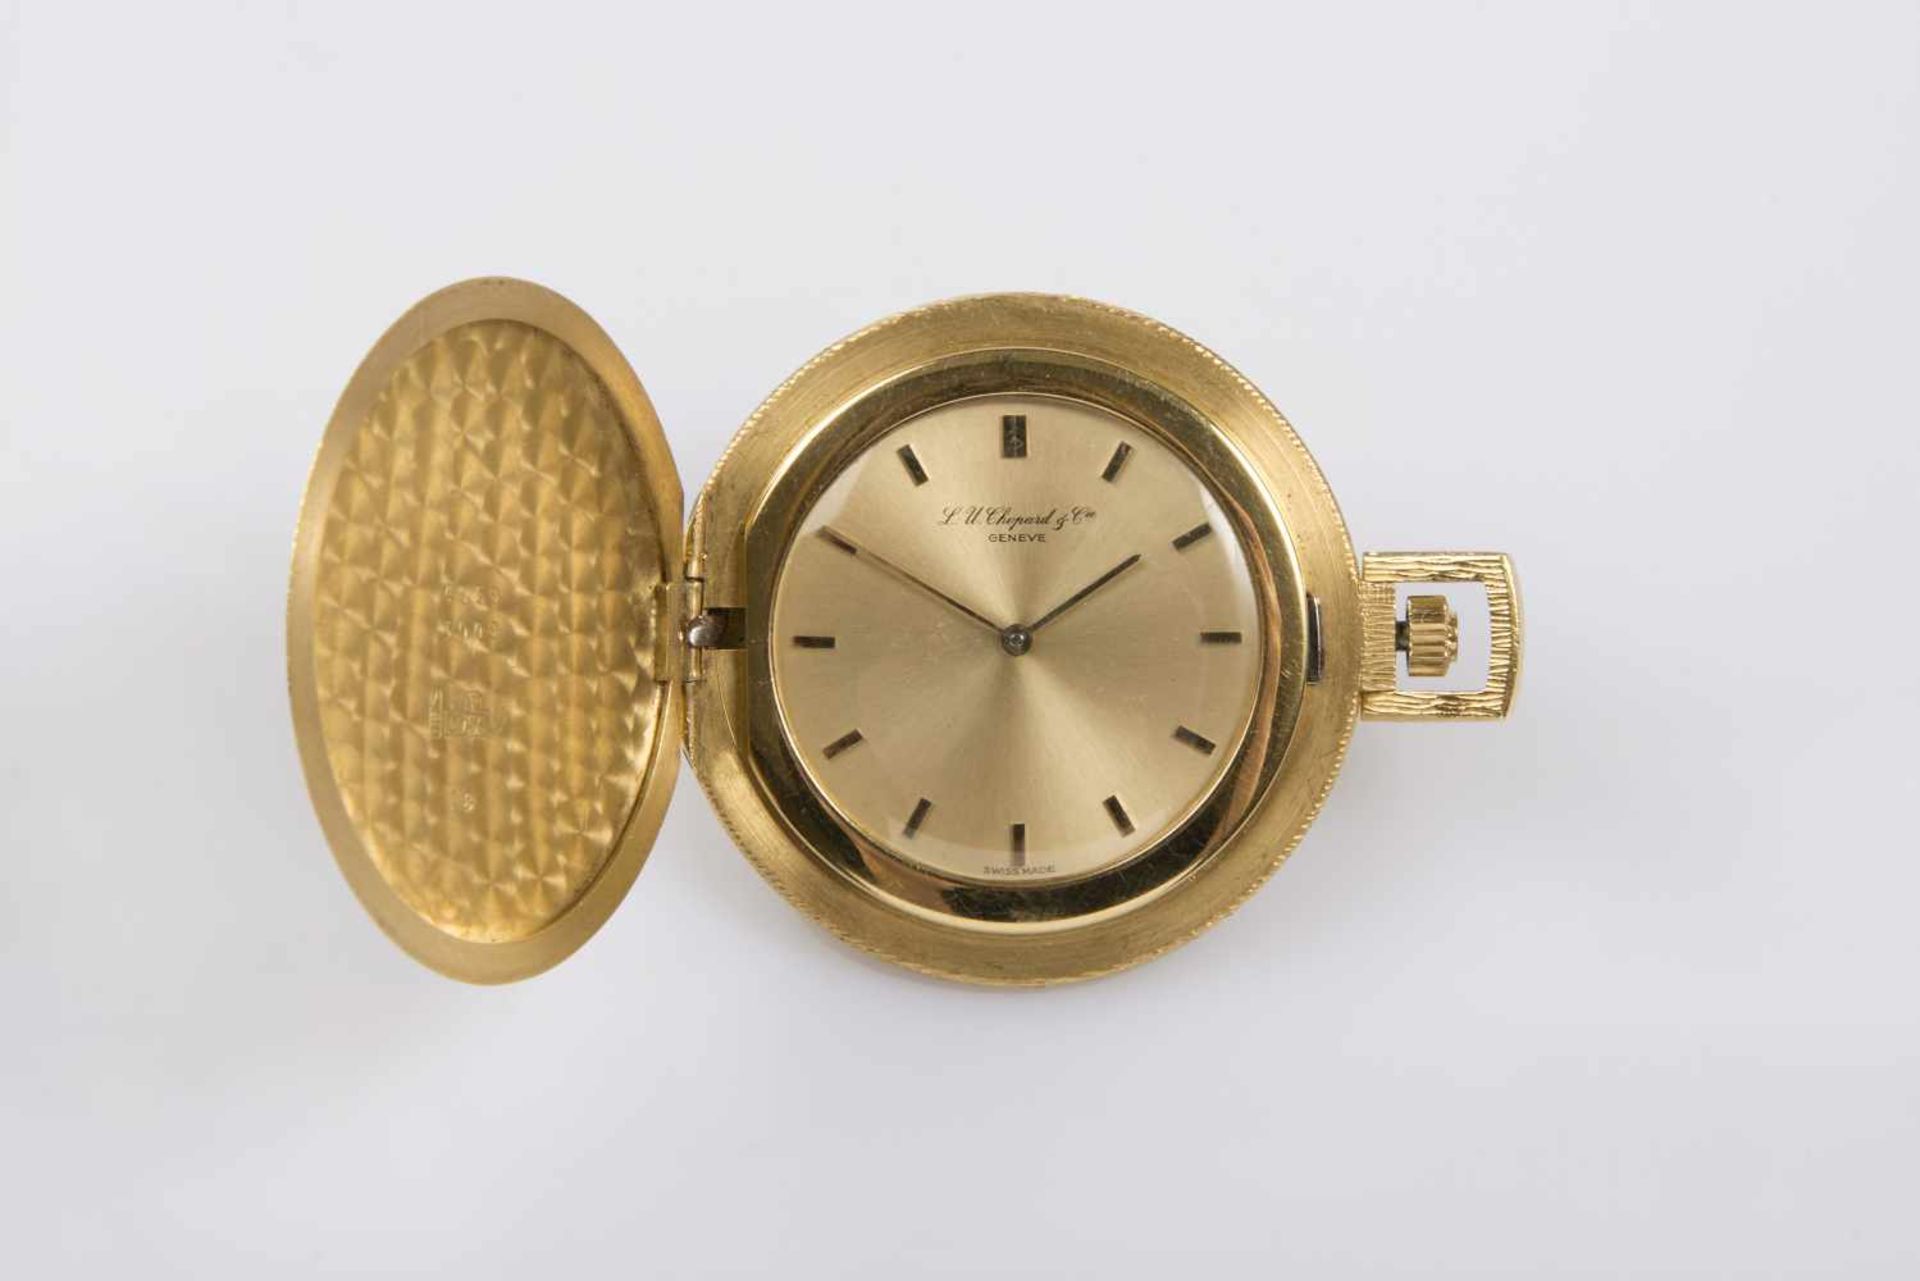 Chopard Frackuhr Gold 750, goldfarbiges Zifferblatt, Durchmesser 42 mm, 42,5 g, keine Garantie auf